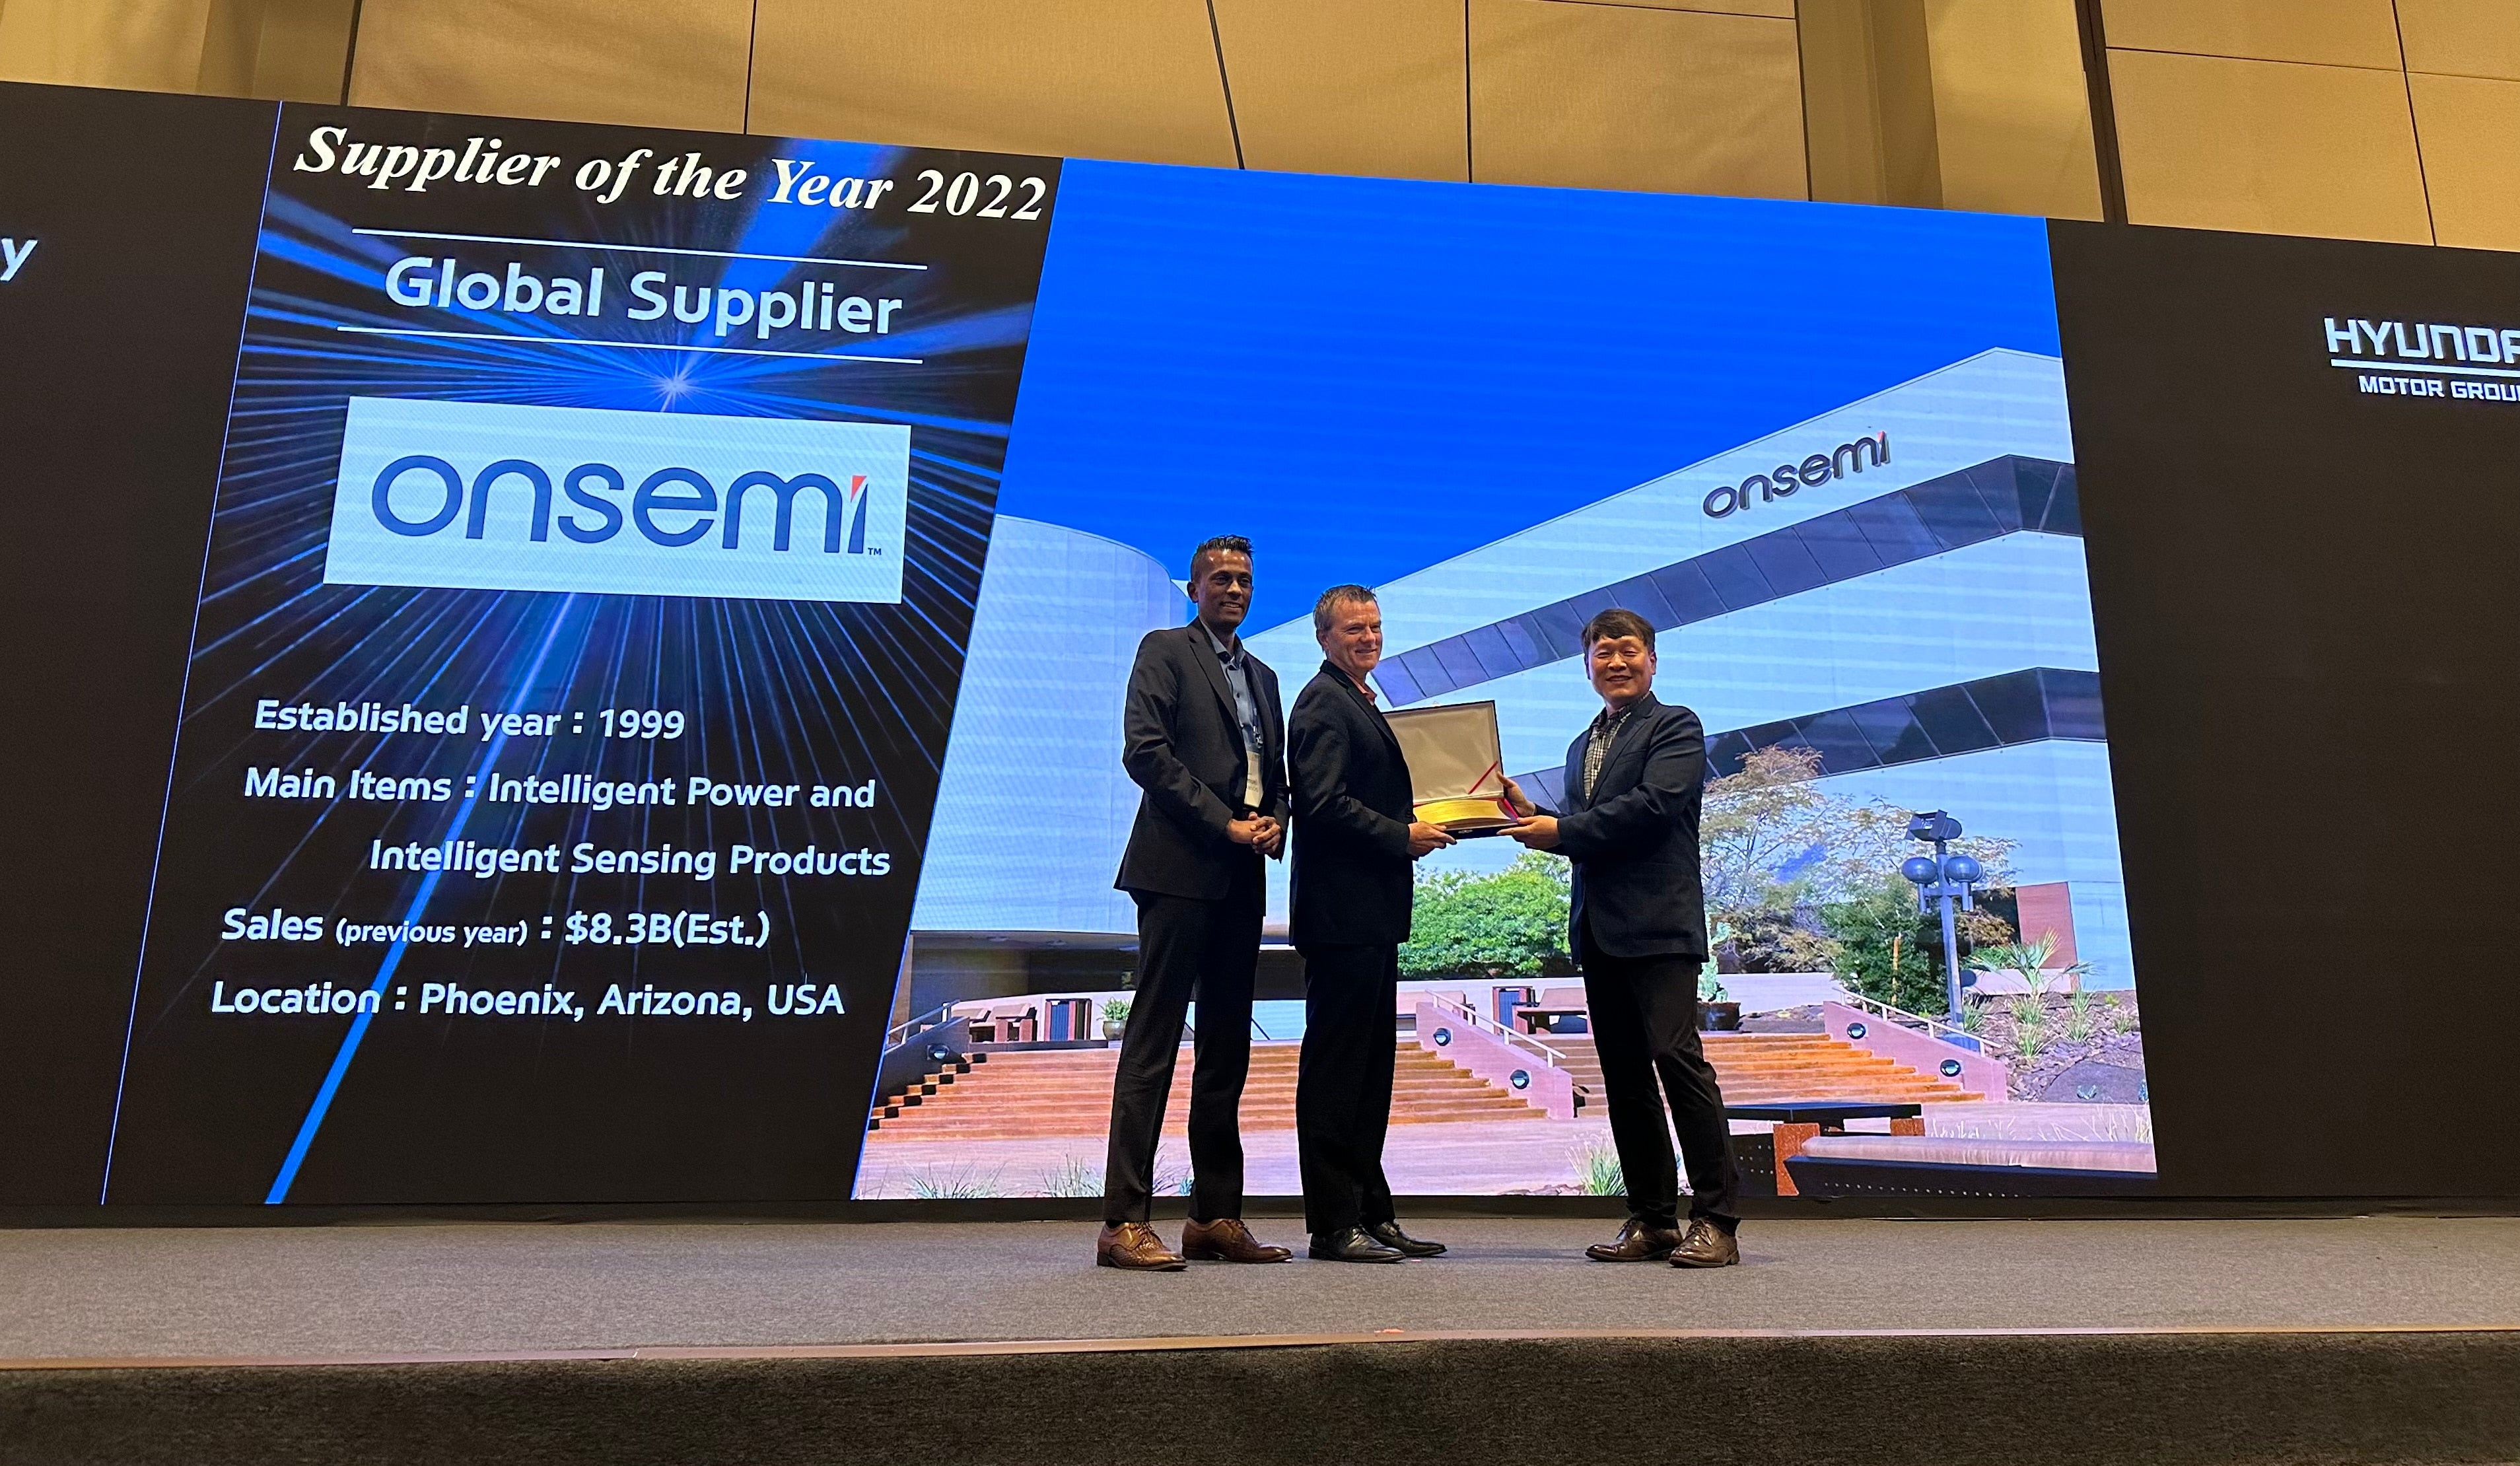 Award by Hyundai Motor Group